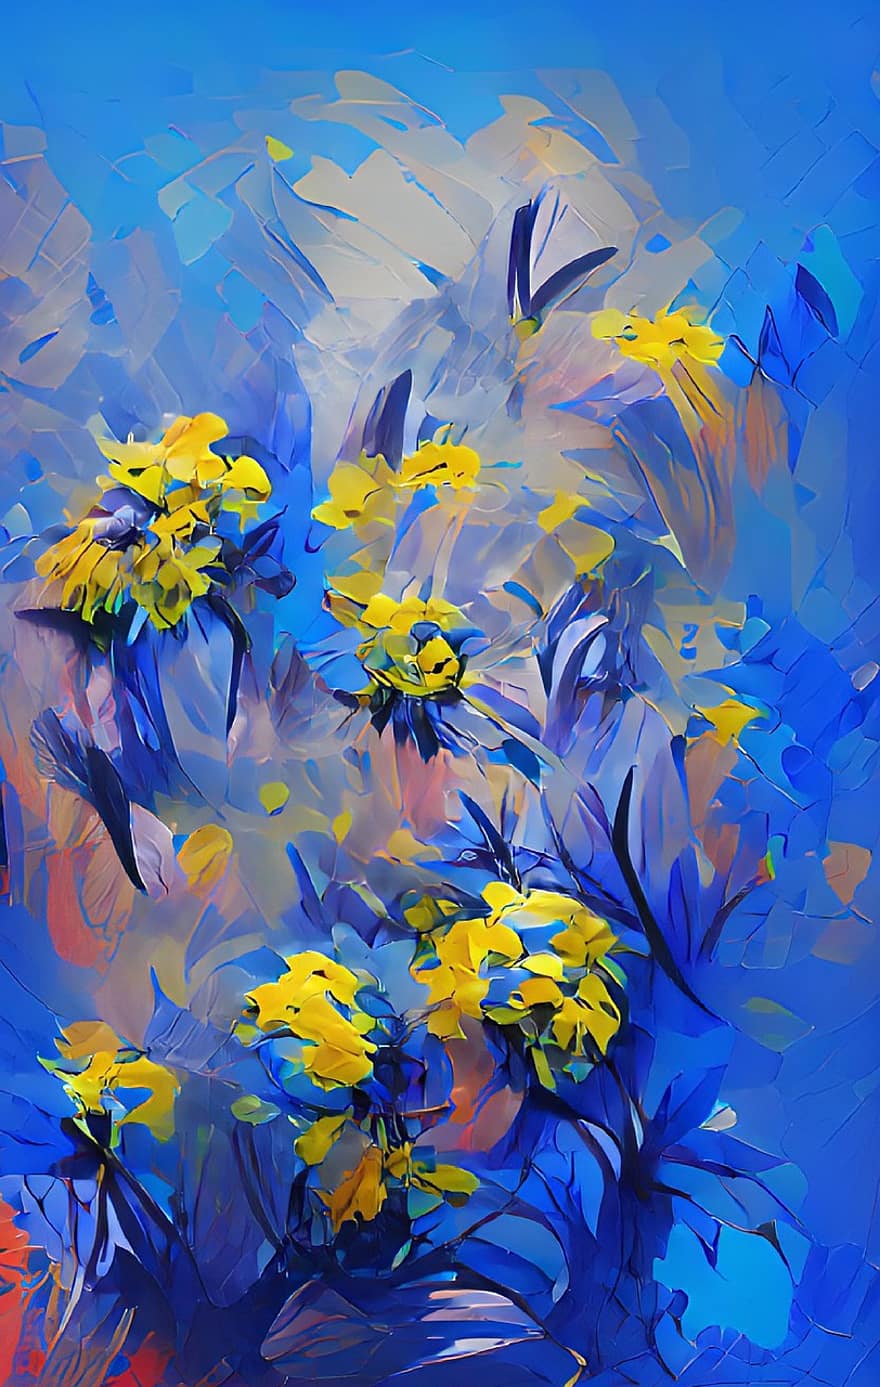 цветы, Аннотация, Украина, произведение искусства, картина, творческий, растения, фоны, иллюстрация, синий, желтый